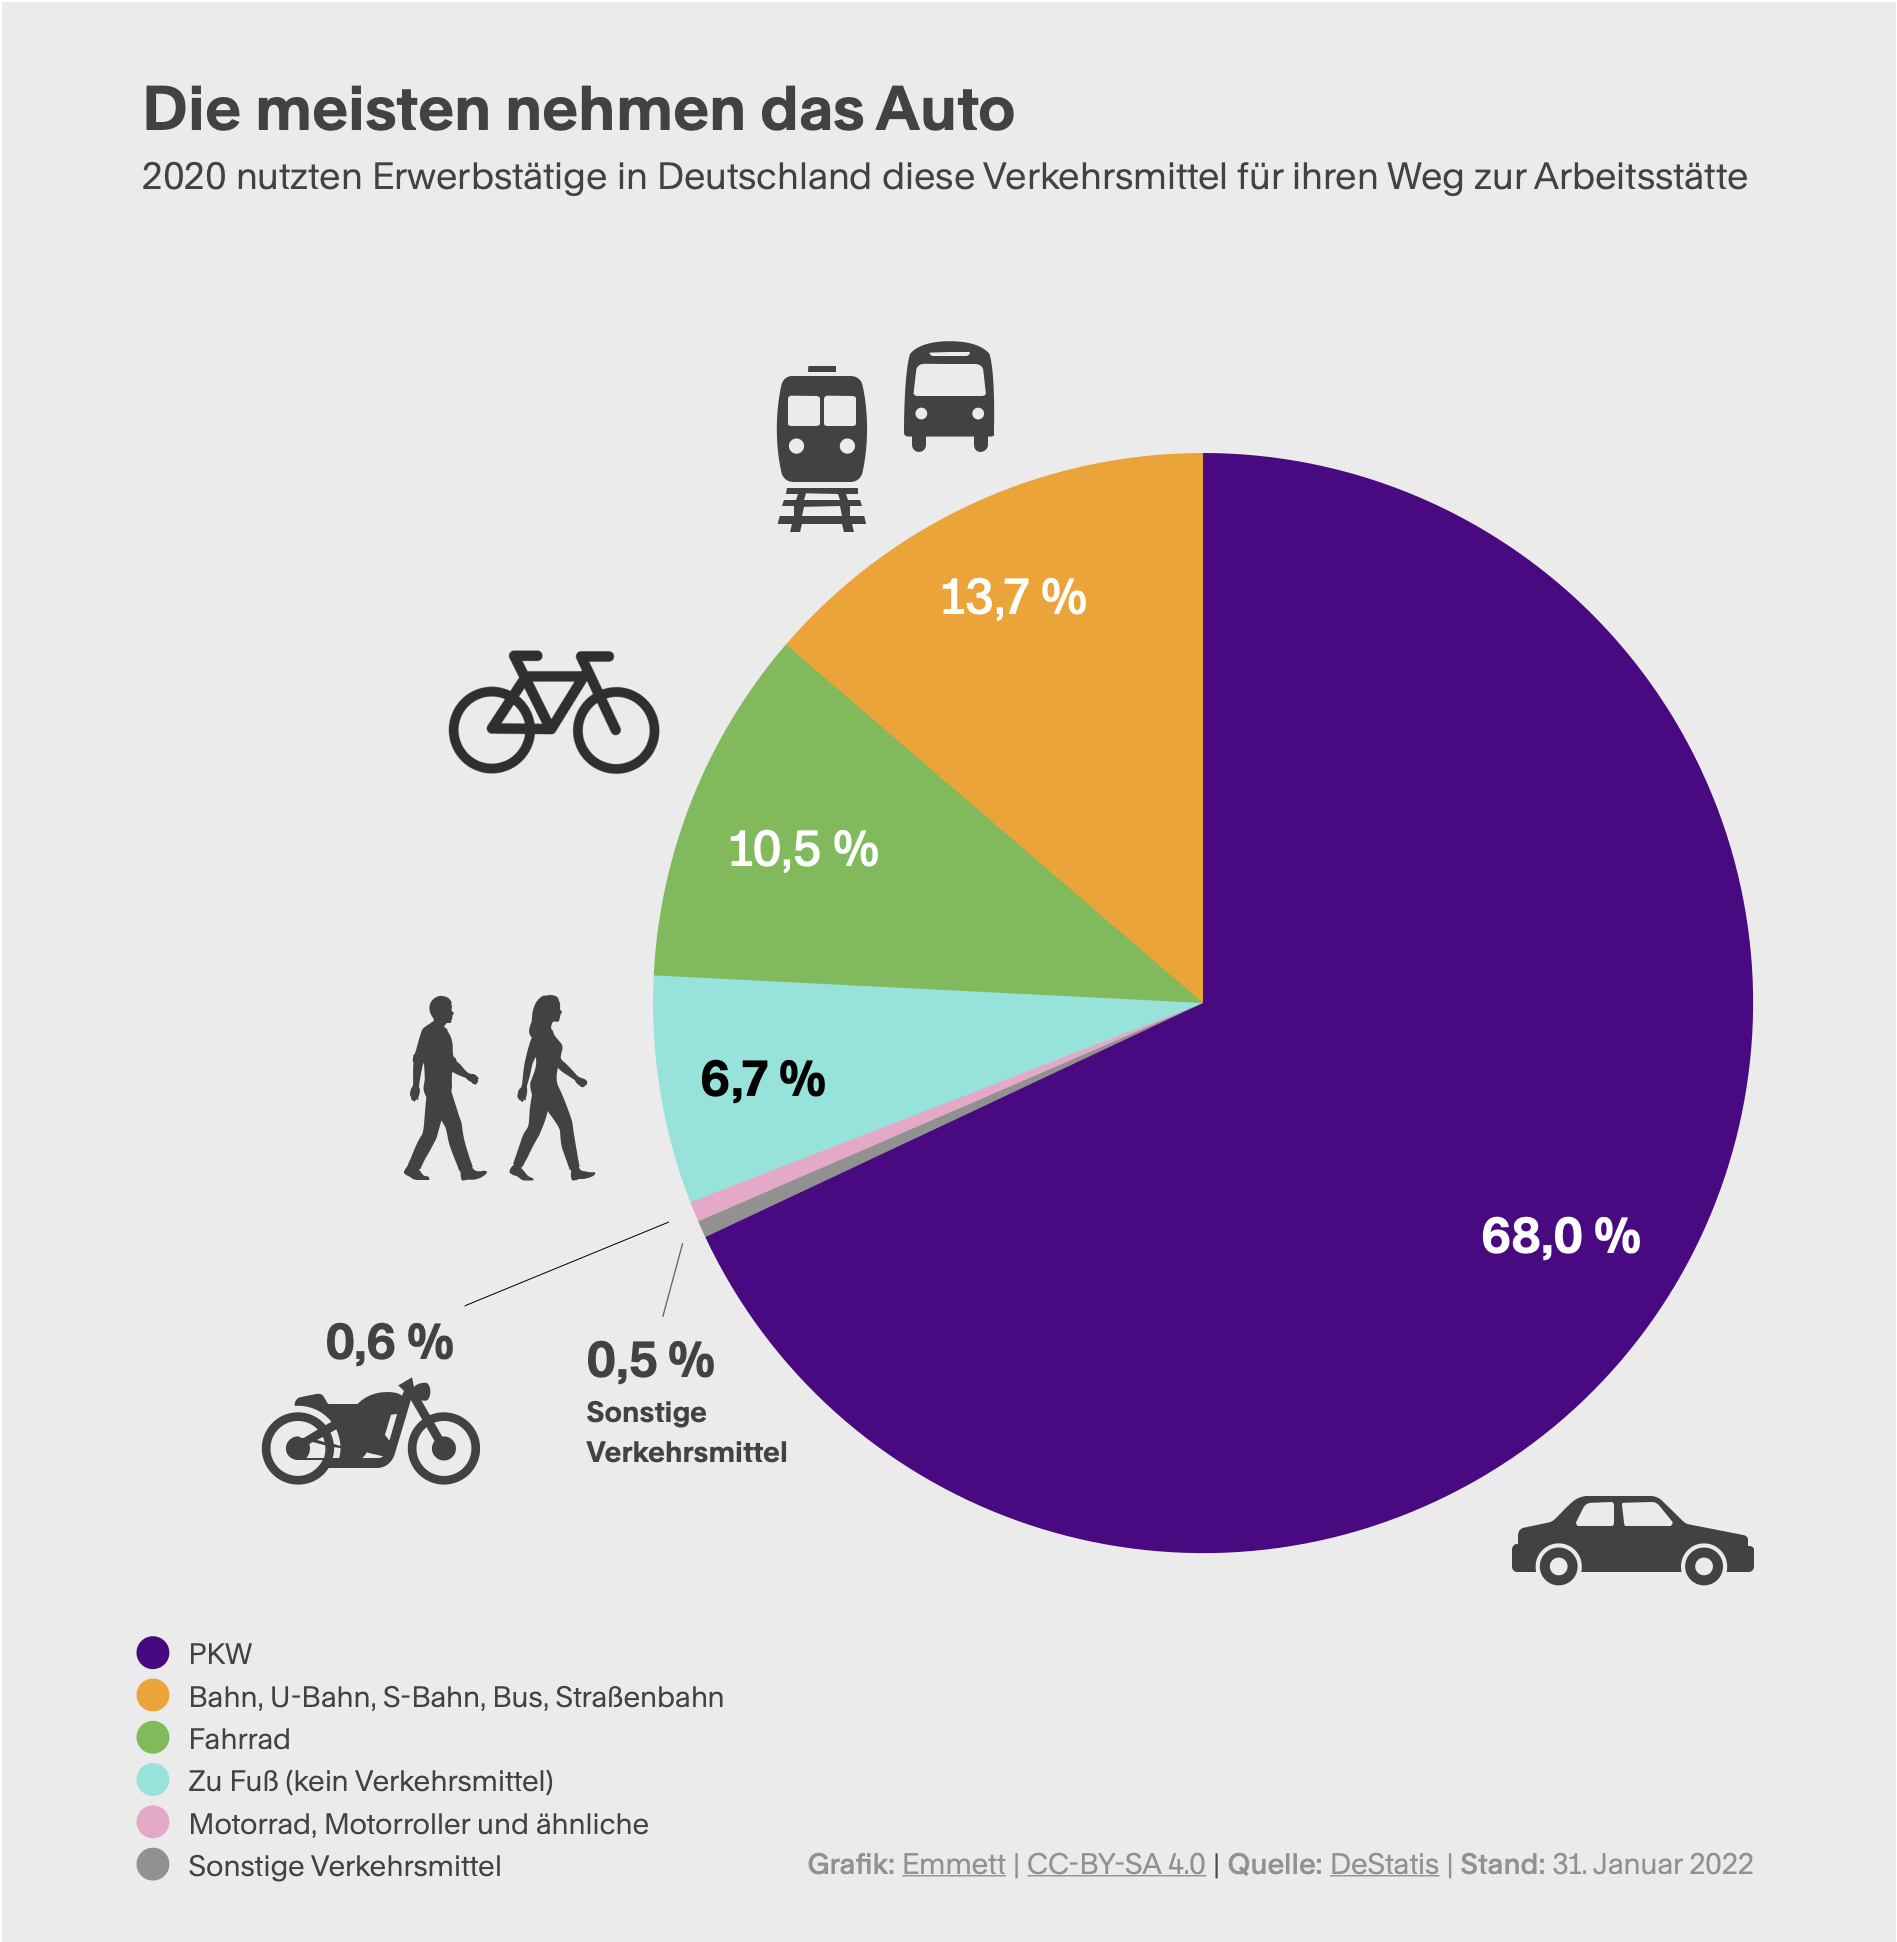 Tortendiagramm, das die Verteilung der beim Pendeln genutzten Verkehrsmittel in Deutschland zeigt